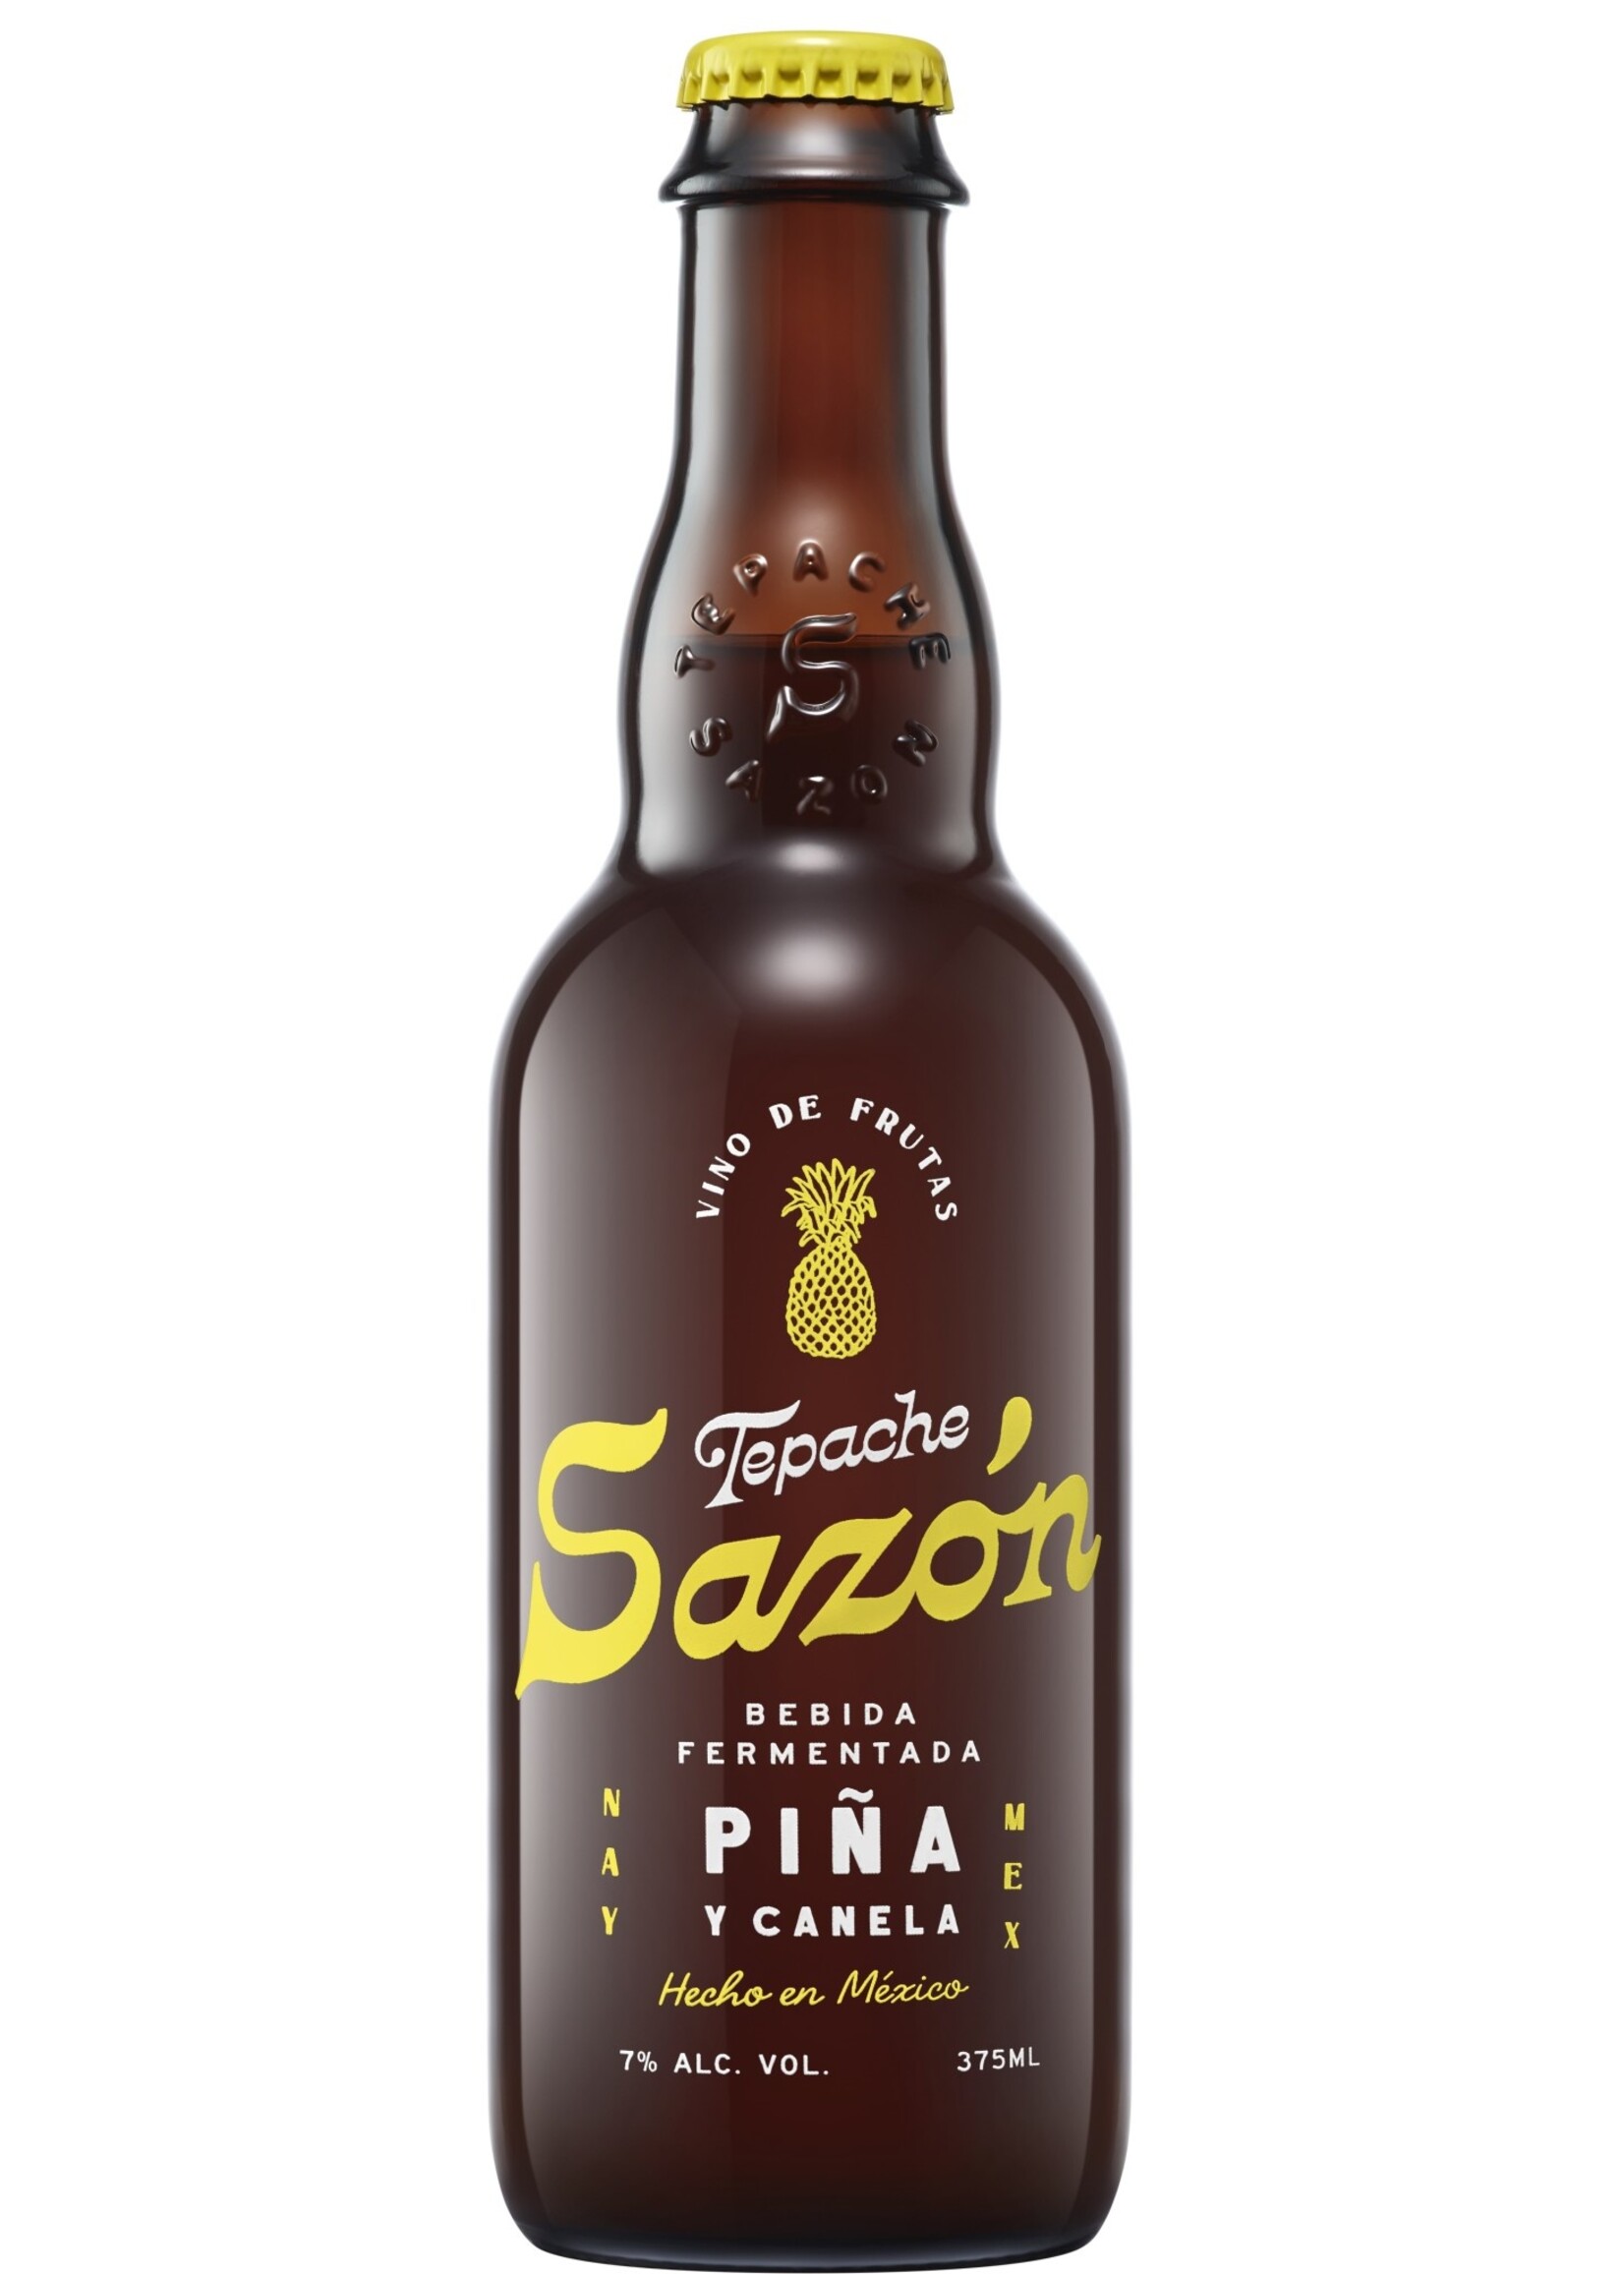 Tepache Sazon Tepache Sazon / Pina y Canela (Pineapple & Cinnamon) 7% abv / 375mL